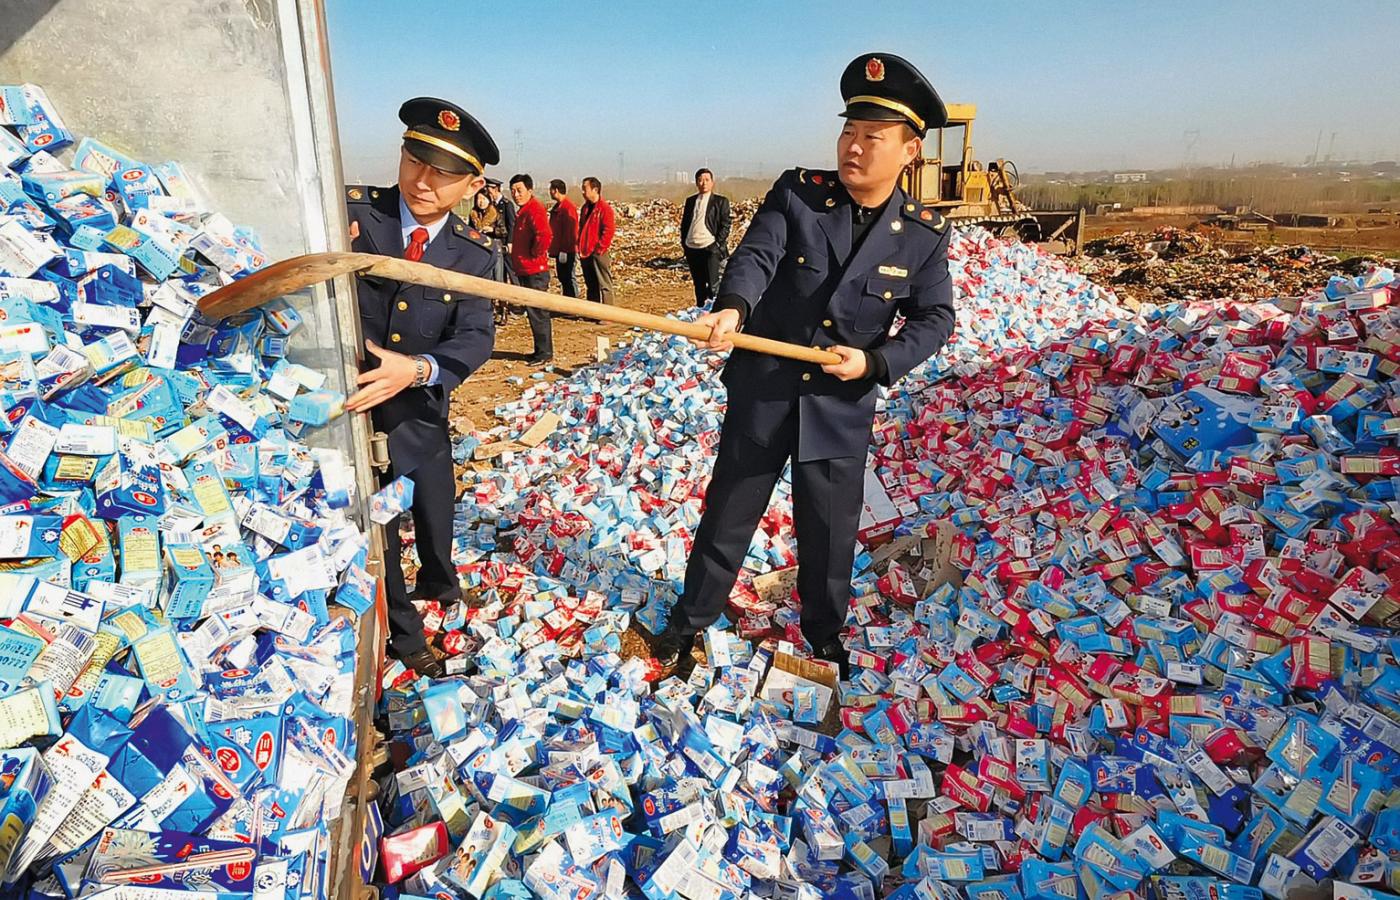 Niszczenie skażonego mleka w proszku skonfiskowanego w prowincji Henan.